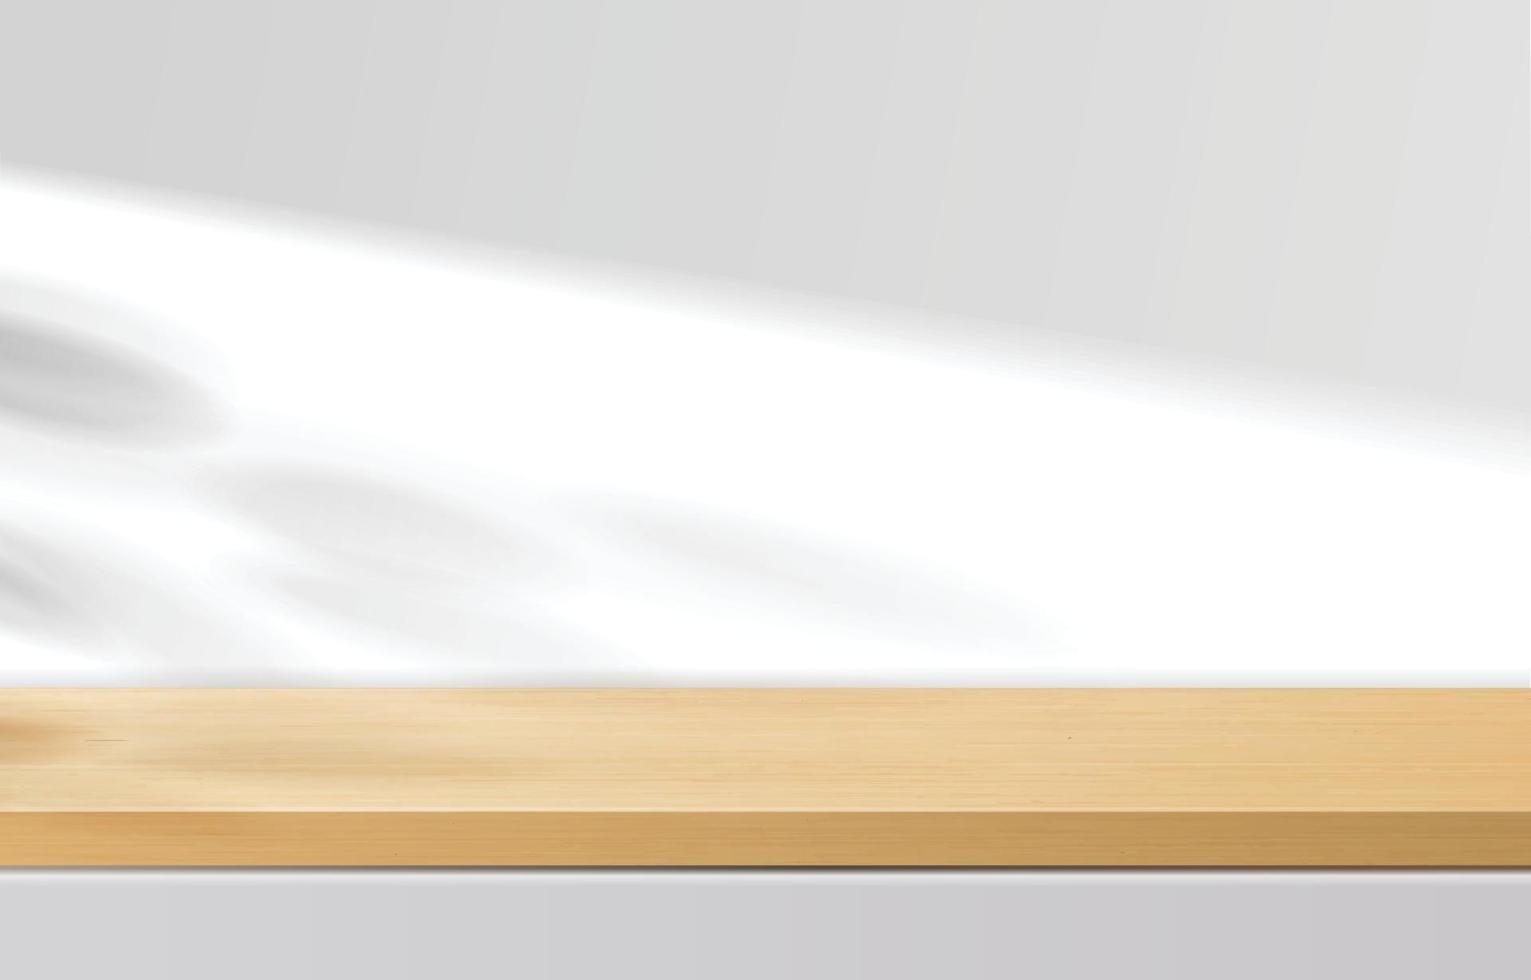 table de dessus en bois minimale vide, podium en bois sur fond blanc avec des feuilles d'ombre. pour la présentation du produit, la maquette, l'exposition de produits cosmétiques, le podium, le piédestal de scène ou la plate-forme. vecteur 3D